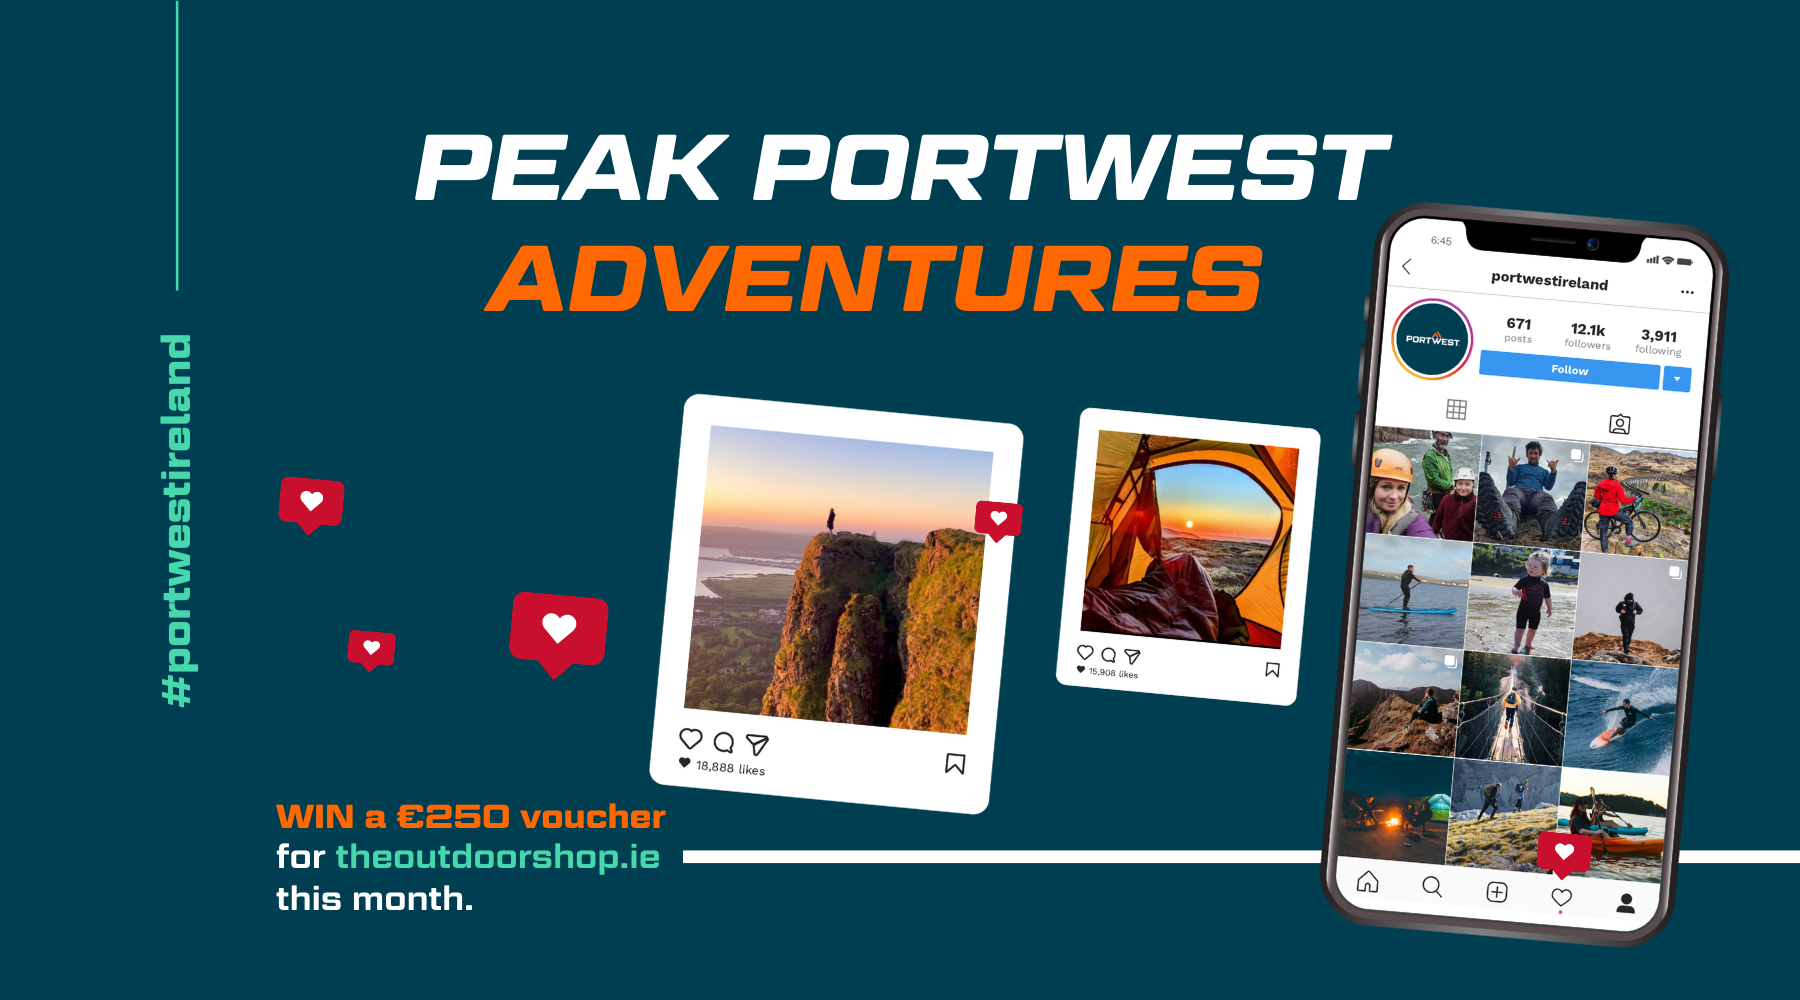 Peak Portwest Adventures Image